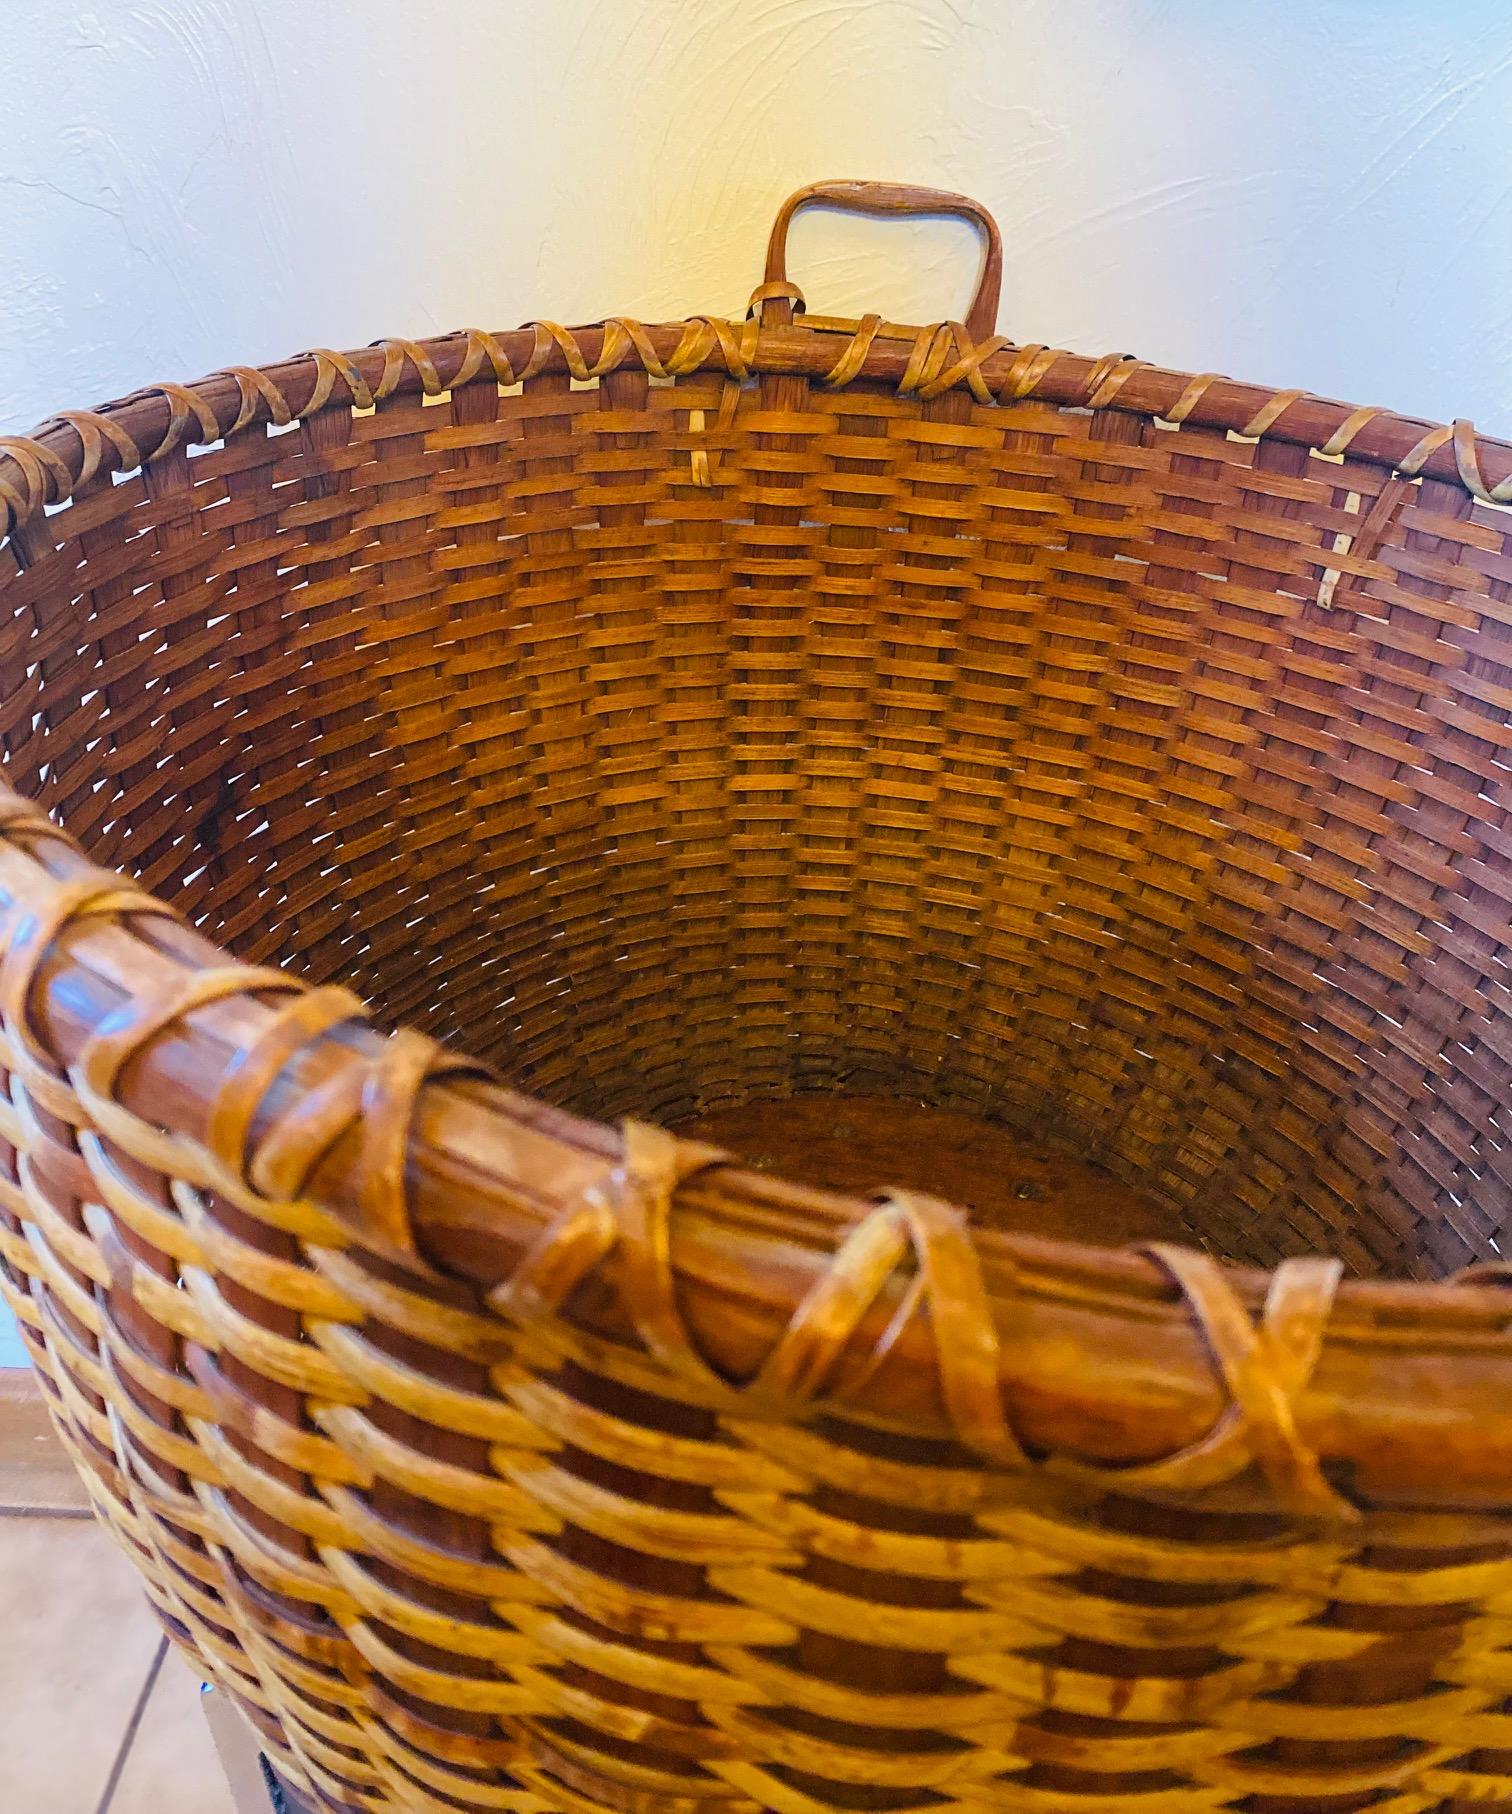 Sehr seltener Nantucket Lightship Bushel Basket von George C. Gardner von der Insel Nantucket (1809 - 1889), ein übergroßer, runder, offener Korb, handgefertigt mit einem dicken Rattan-Geflecht auf breiten Holzstäben, einem geschnitzten,